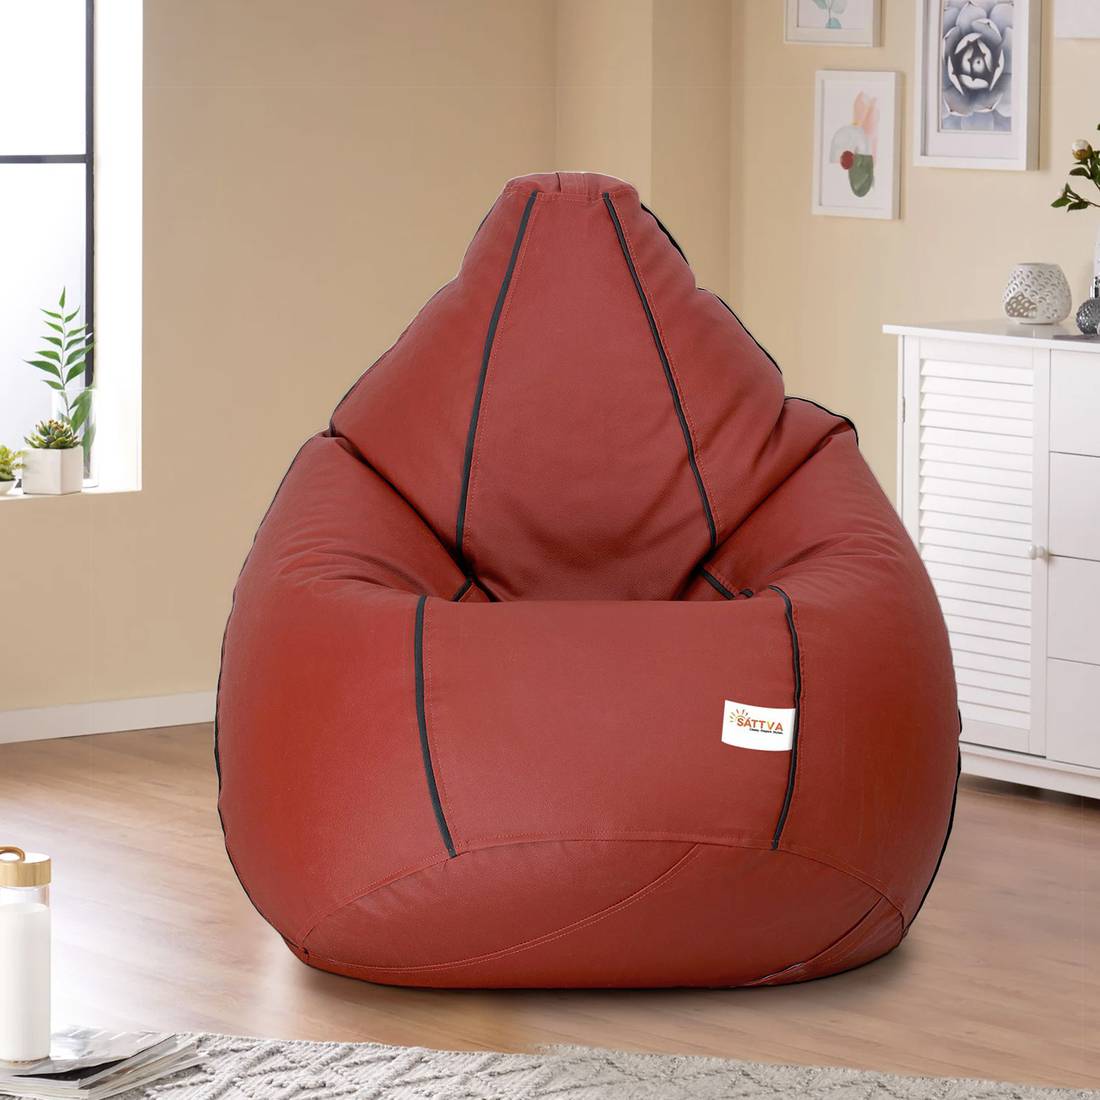 Argos Home Faux Leather Bean Bag Chair Reviews